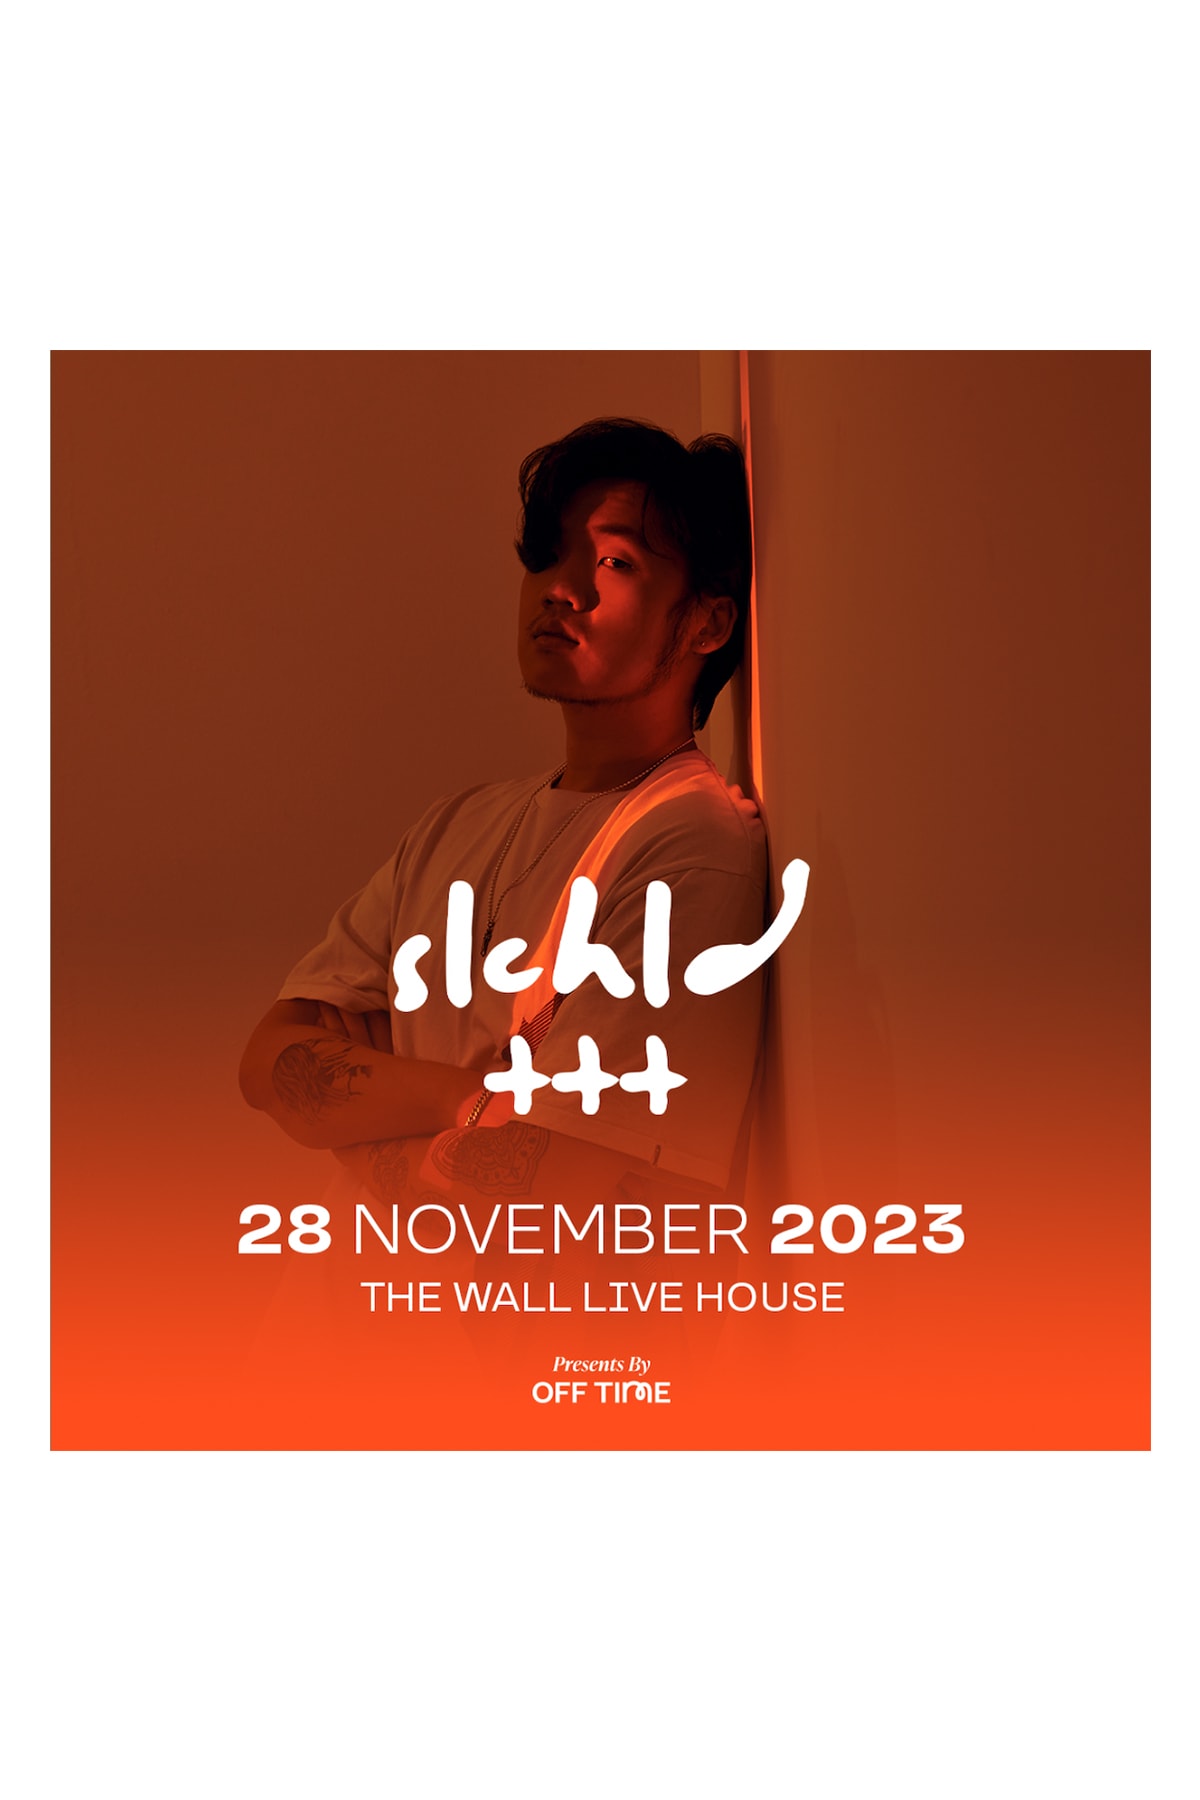 加裔韓籍 R&B 歌手 slchld 正式宣佈舉辦台北專場《心碎節拍 slchld live in Taipei 2023》